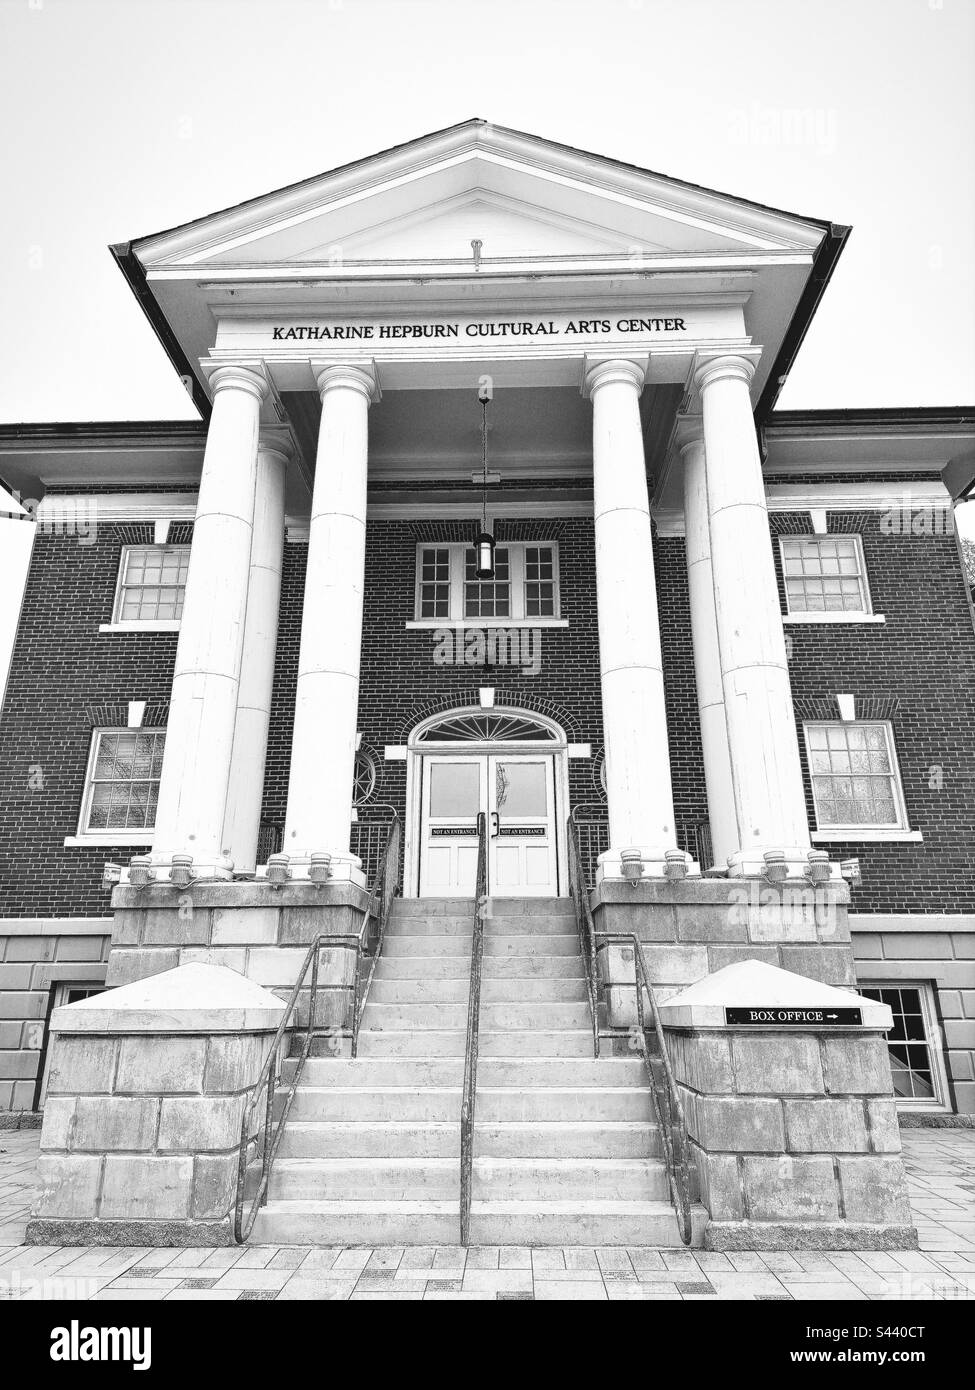 Esterno della parte anteriore del Katharine Hepburn Cultural Arts Center a Old Saybrook, CT. Il Kate è un teatro di arti dello spettacolo. Filtro bianco e nero. Foto Stock